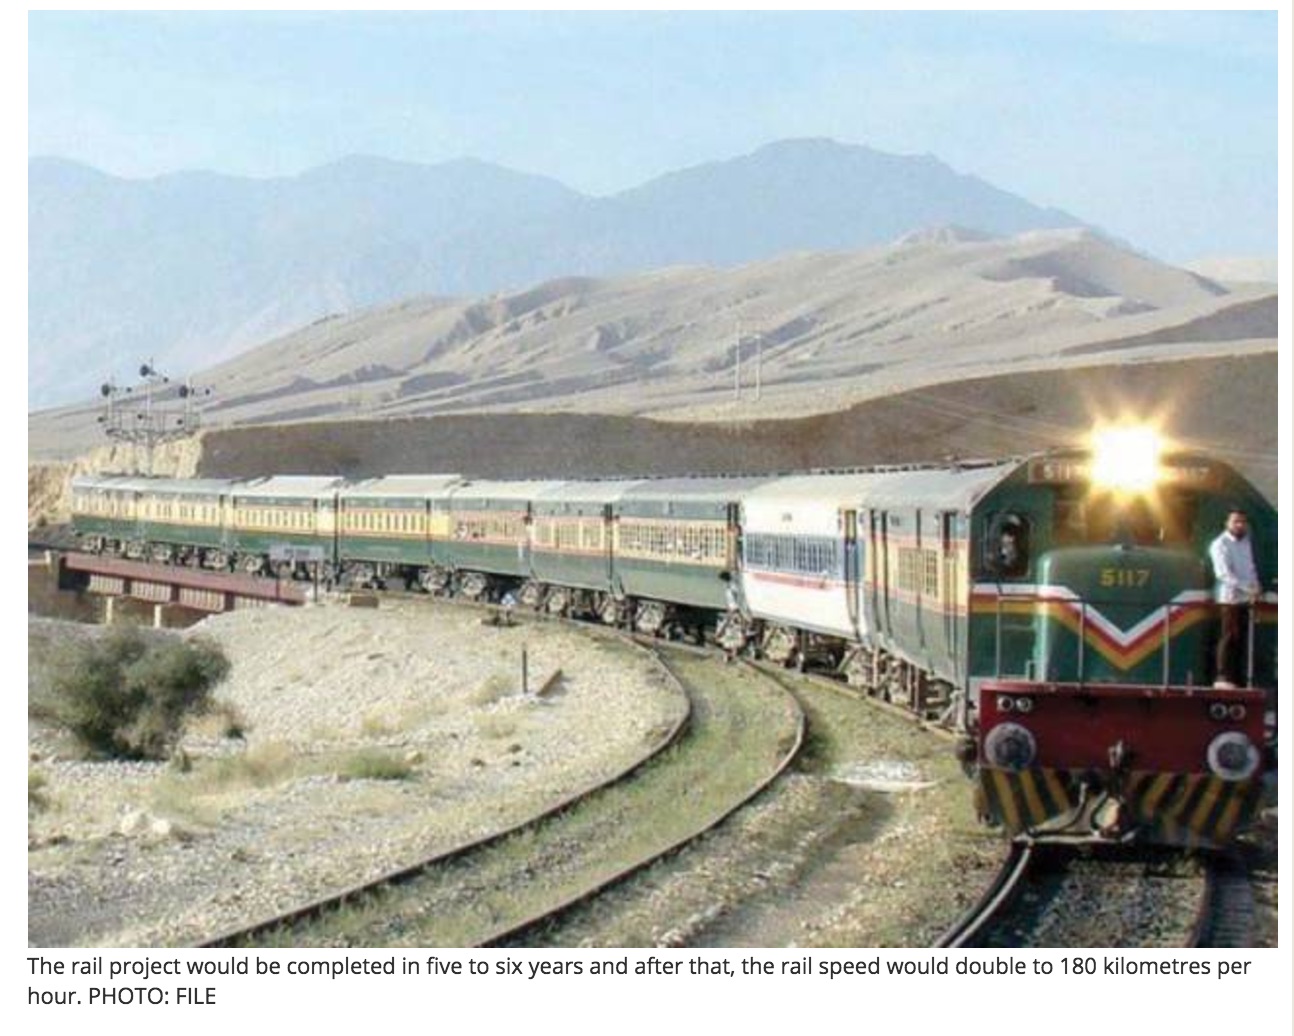 Nouvel investissement pour la Chine dans son projet de corridor économique avec le Pakistan. Copie d'écran de Tribune, le 30 septembre 2016.